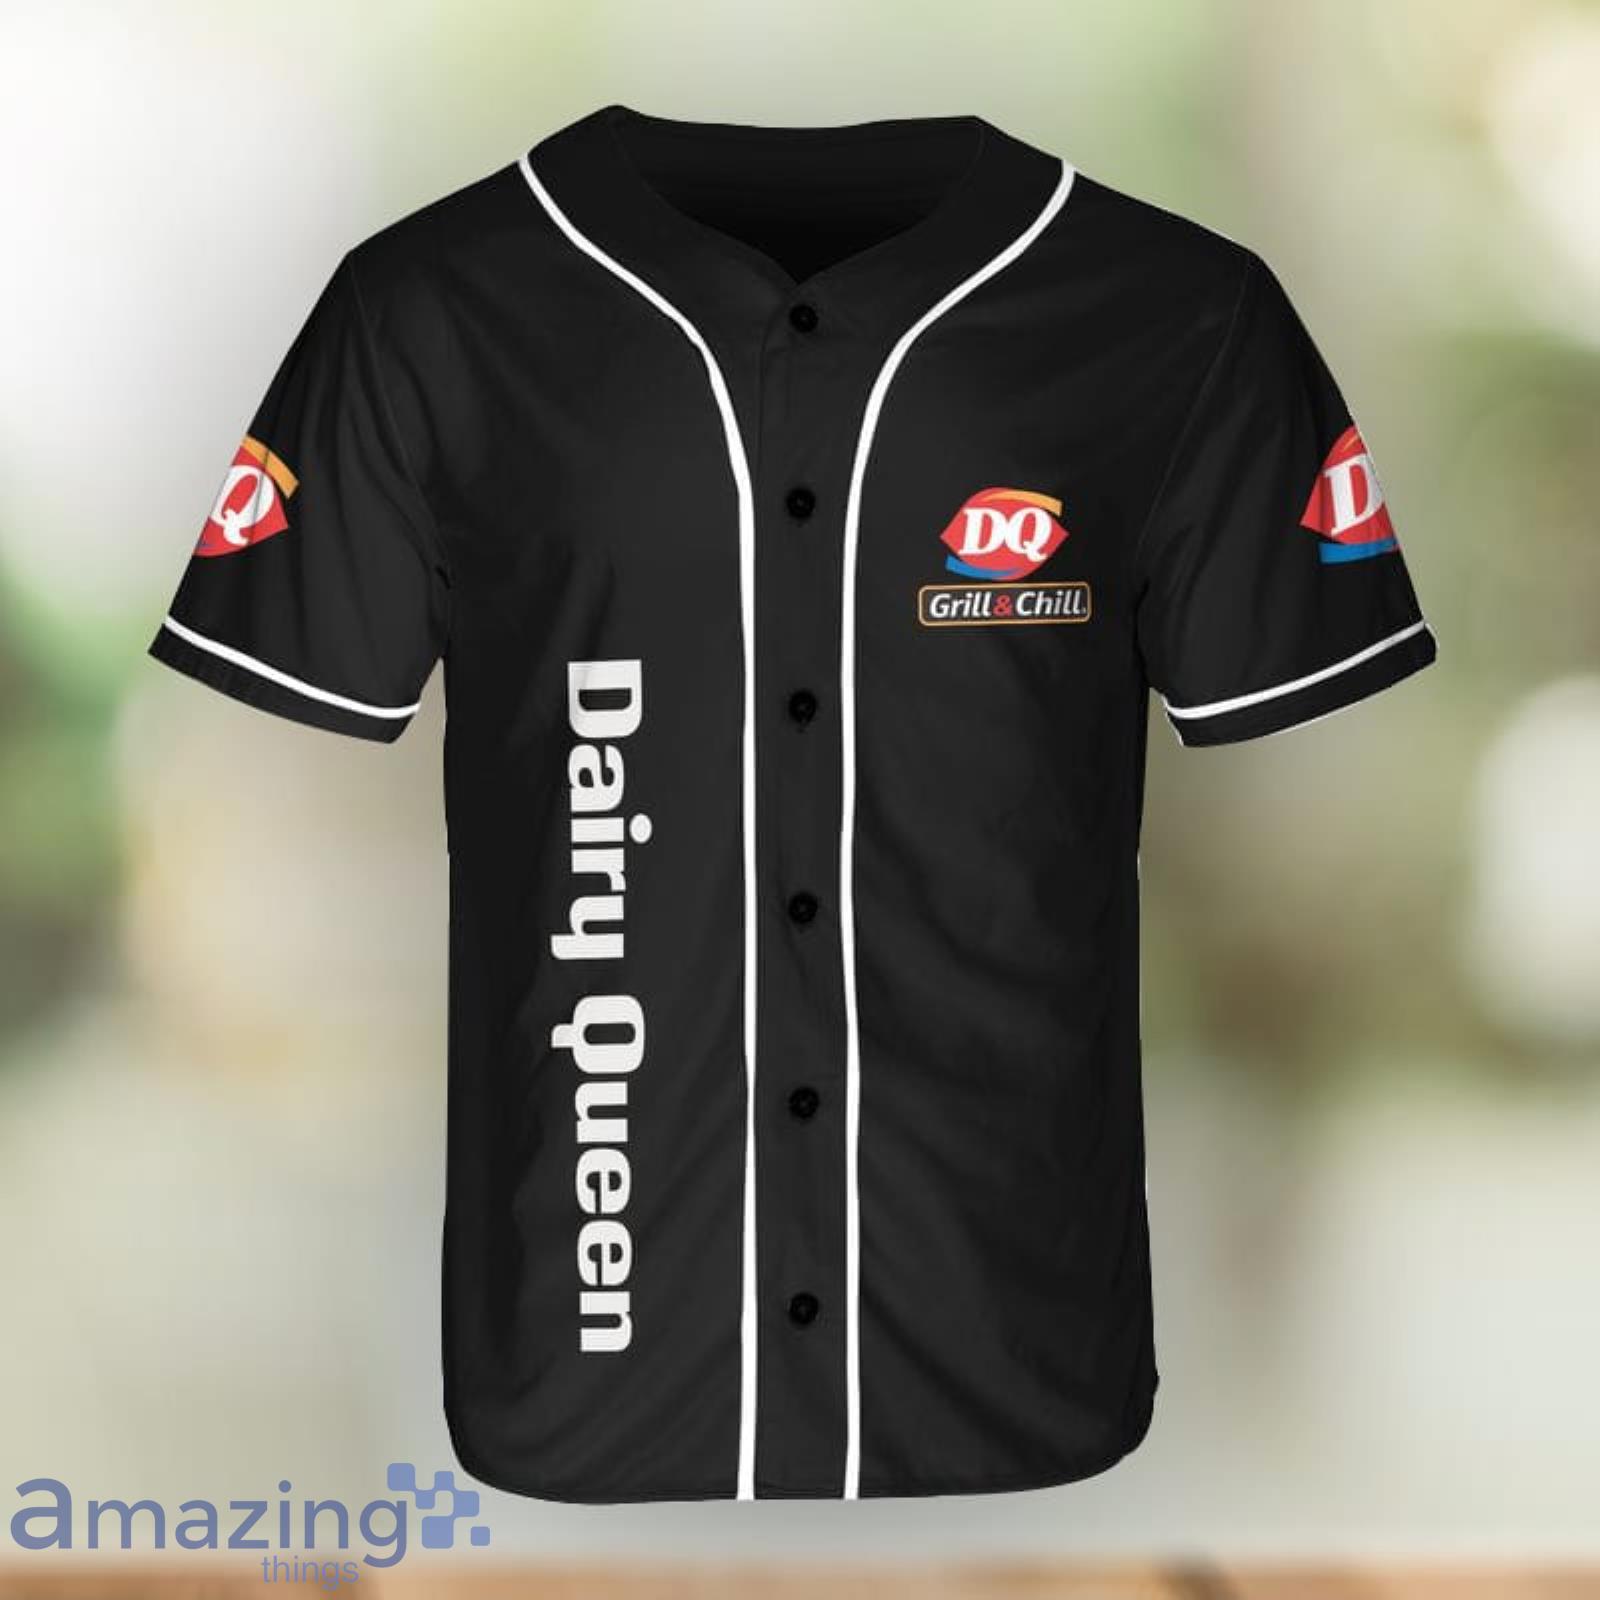 Dairy Queen Baseball Jersey Shirt Men And Women Sport Gift